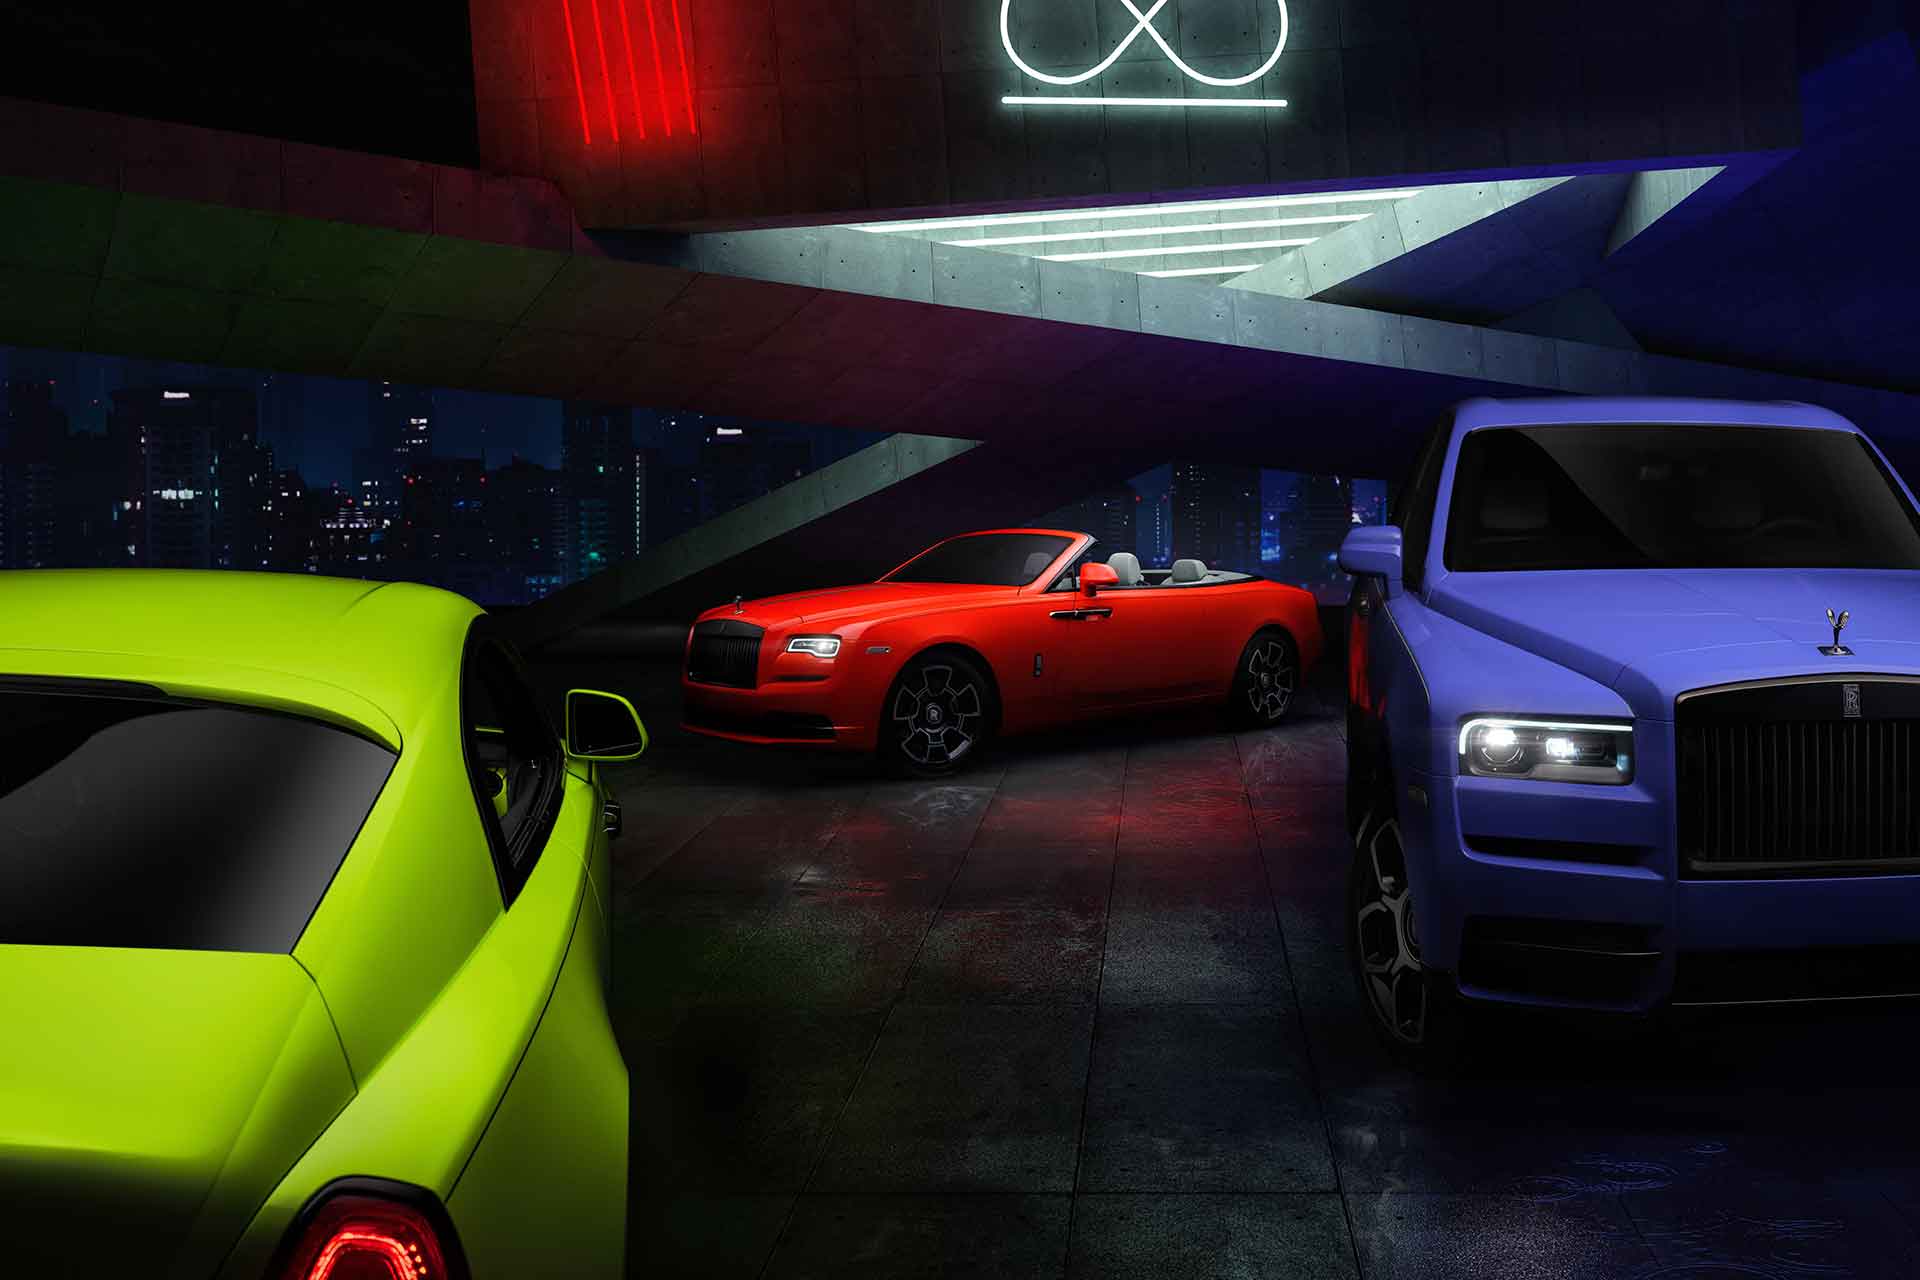 The RollsRoyce Ghost The GameChanging Luxury Sedan  Experience Abu Dhabi